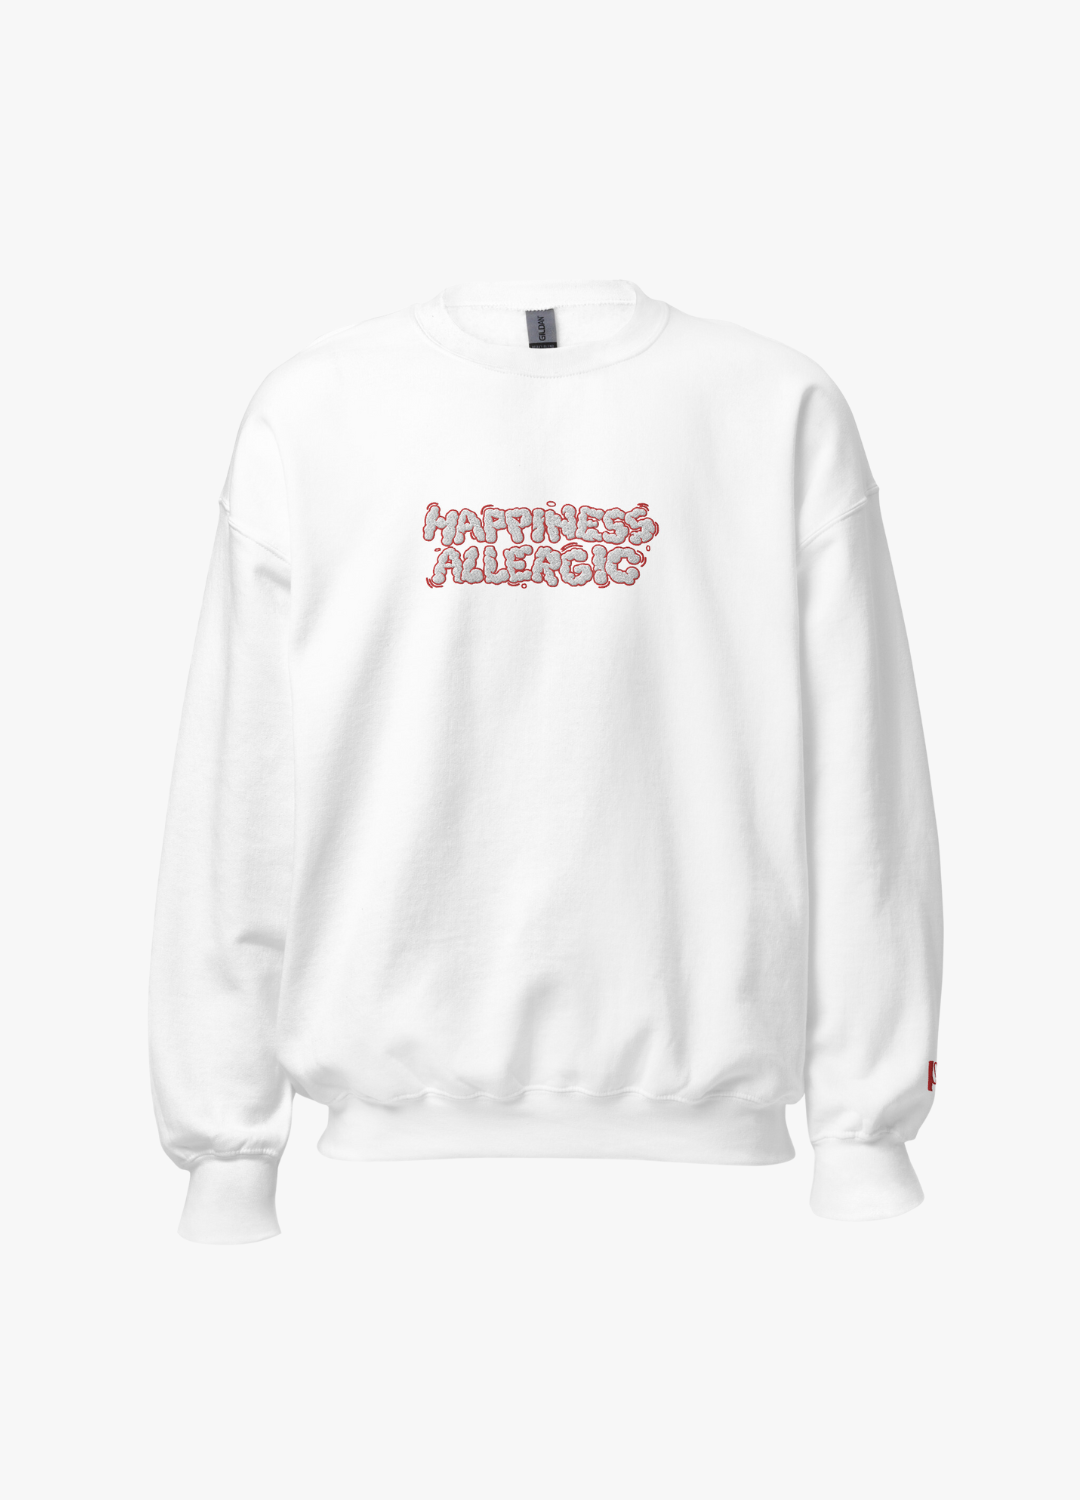 Sweatshirt - Happiness Allergic - White&Red